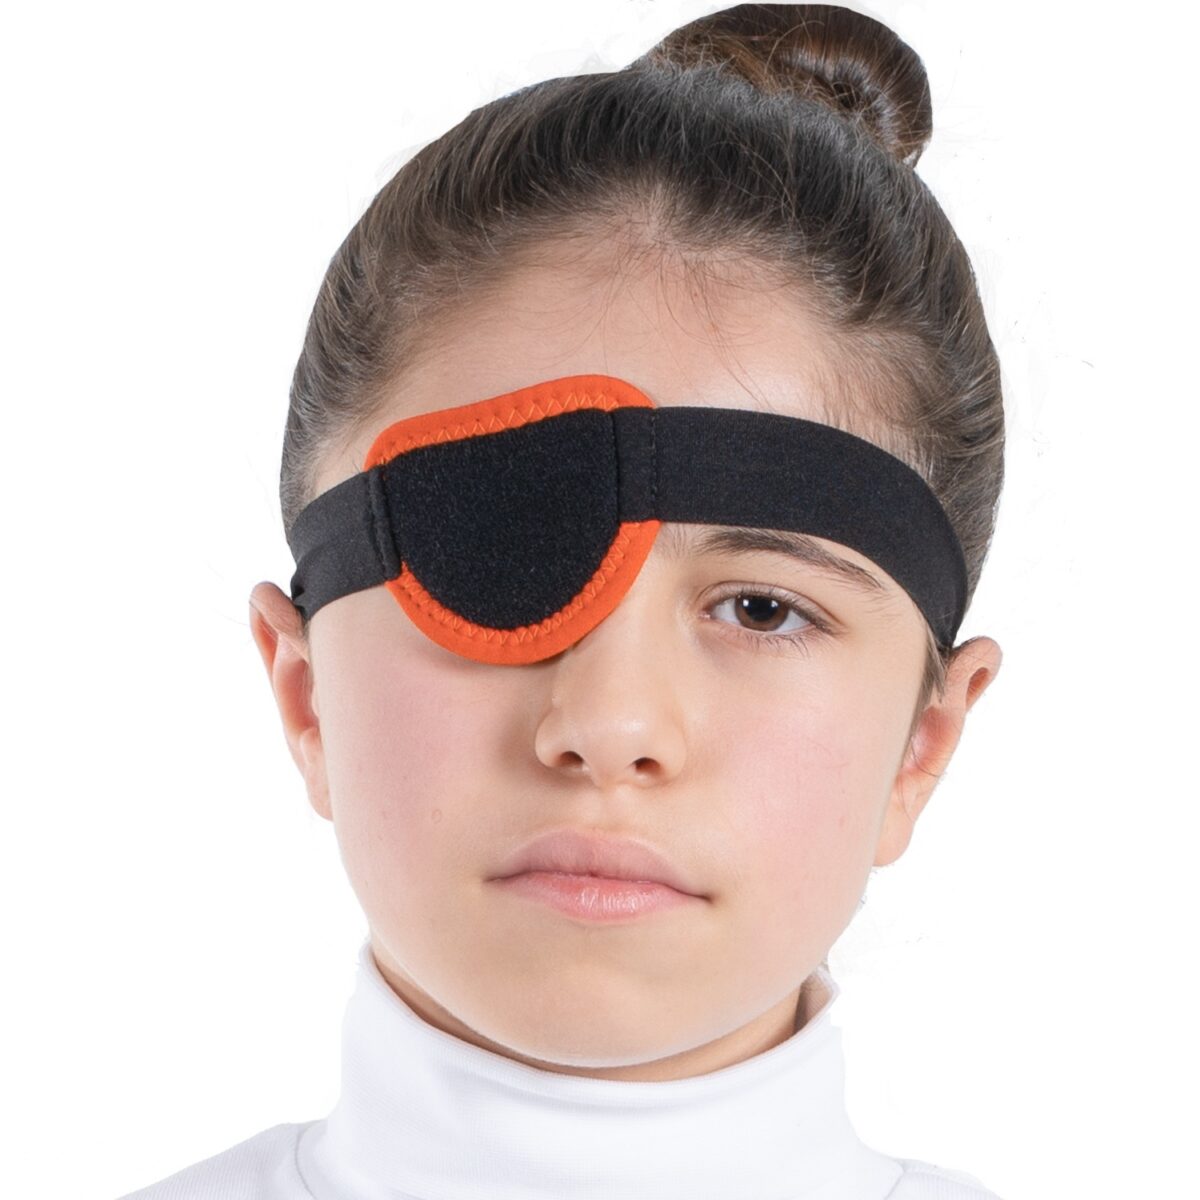 wingmed orthopedic equipments W930 pirate eye bandage 06